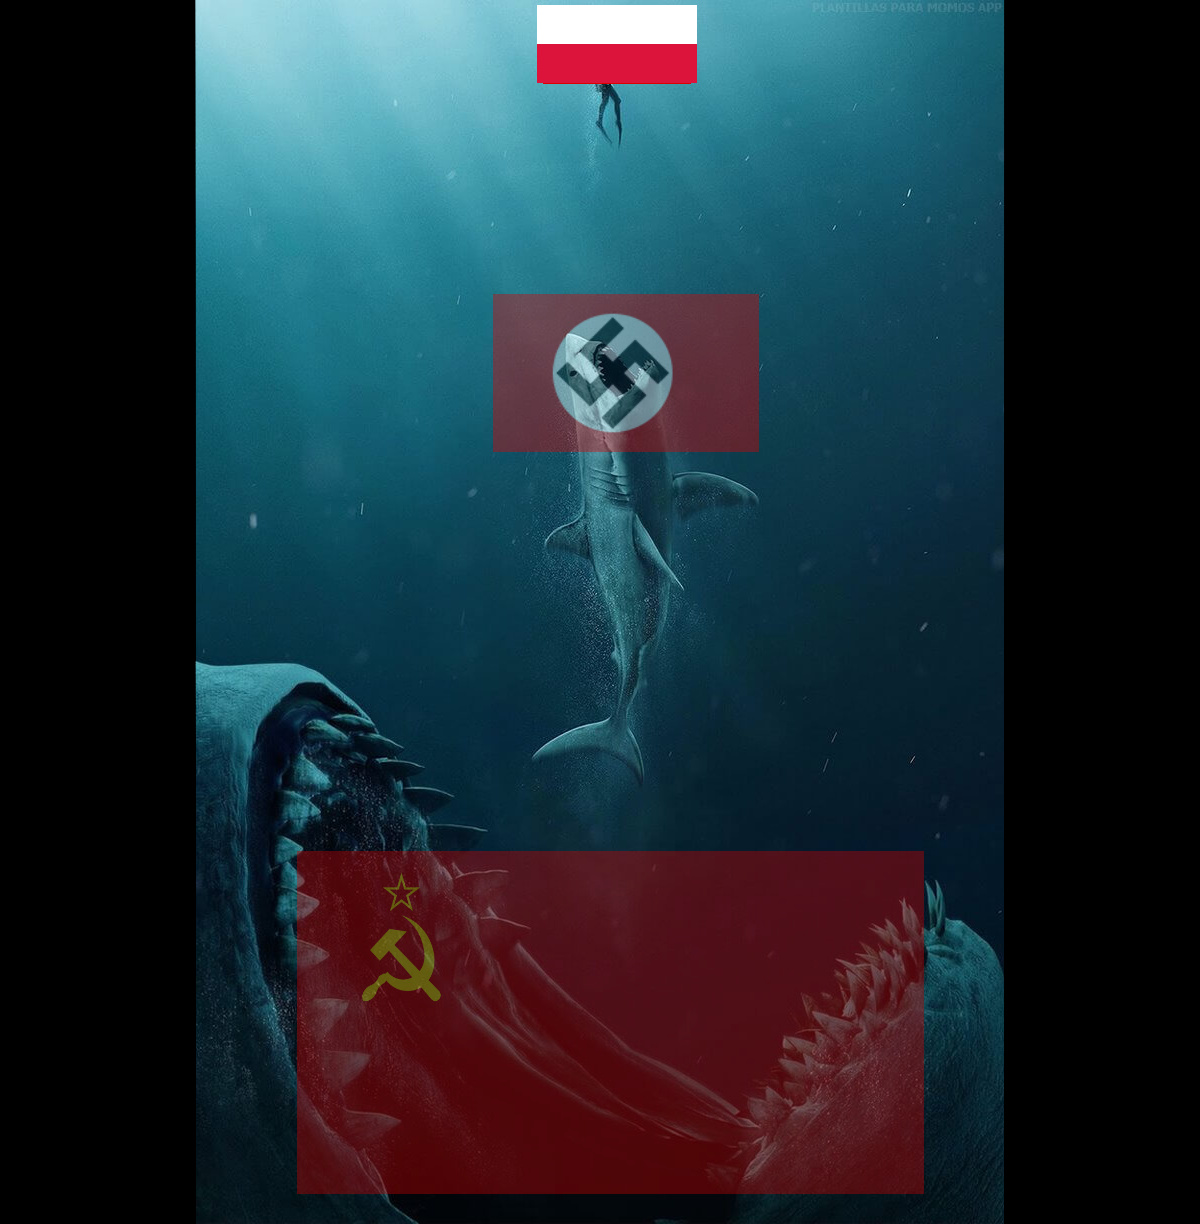 (USSR Anthem intensifies) - meme